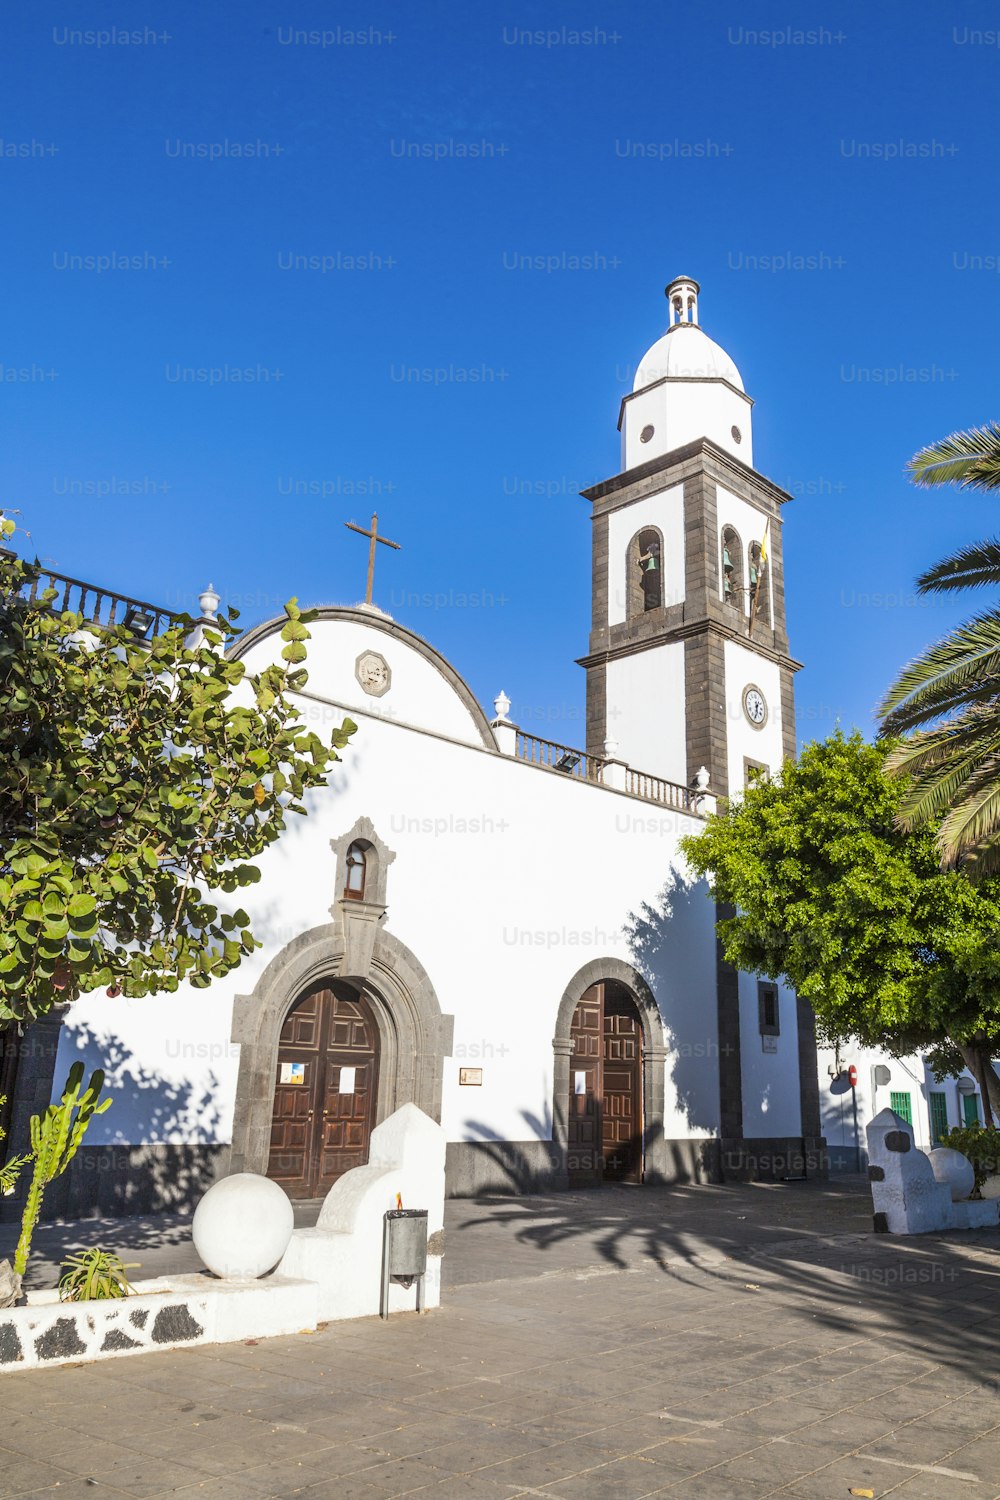 La hermosa iglesia de San Ginés en Arrecife con su exterior encalado y su atractivo campanario